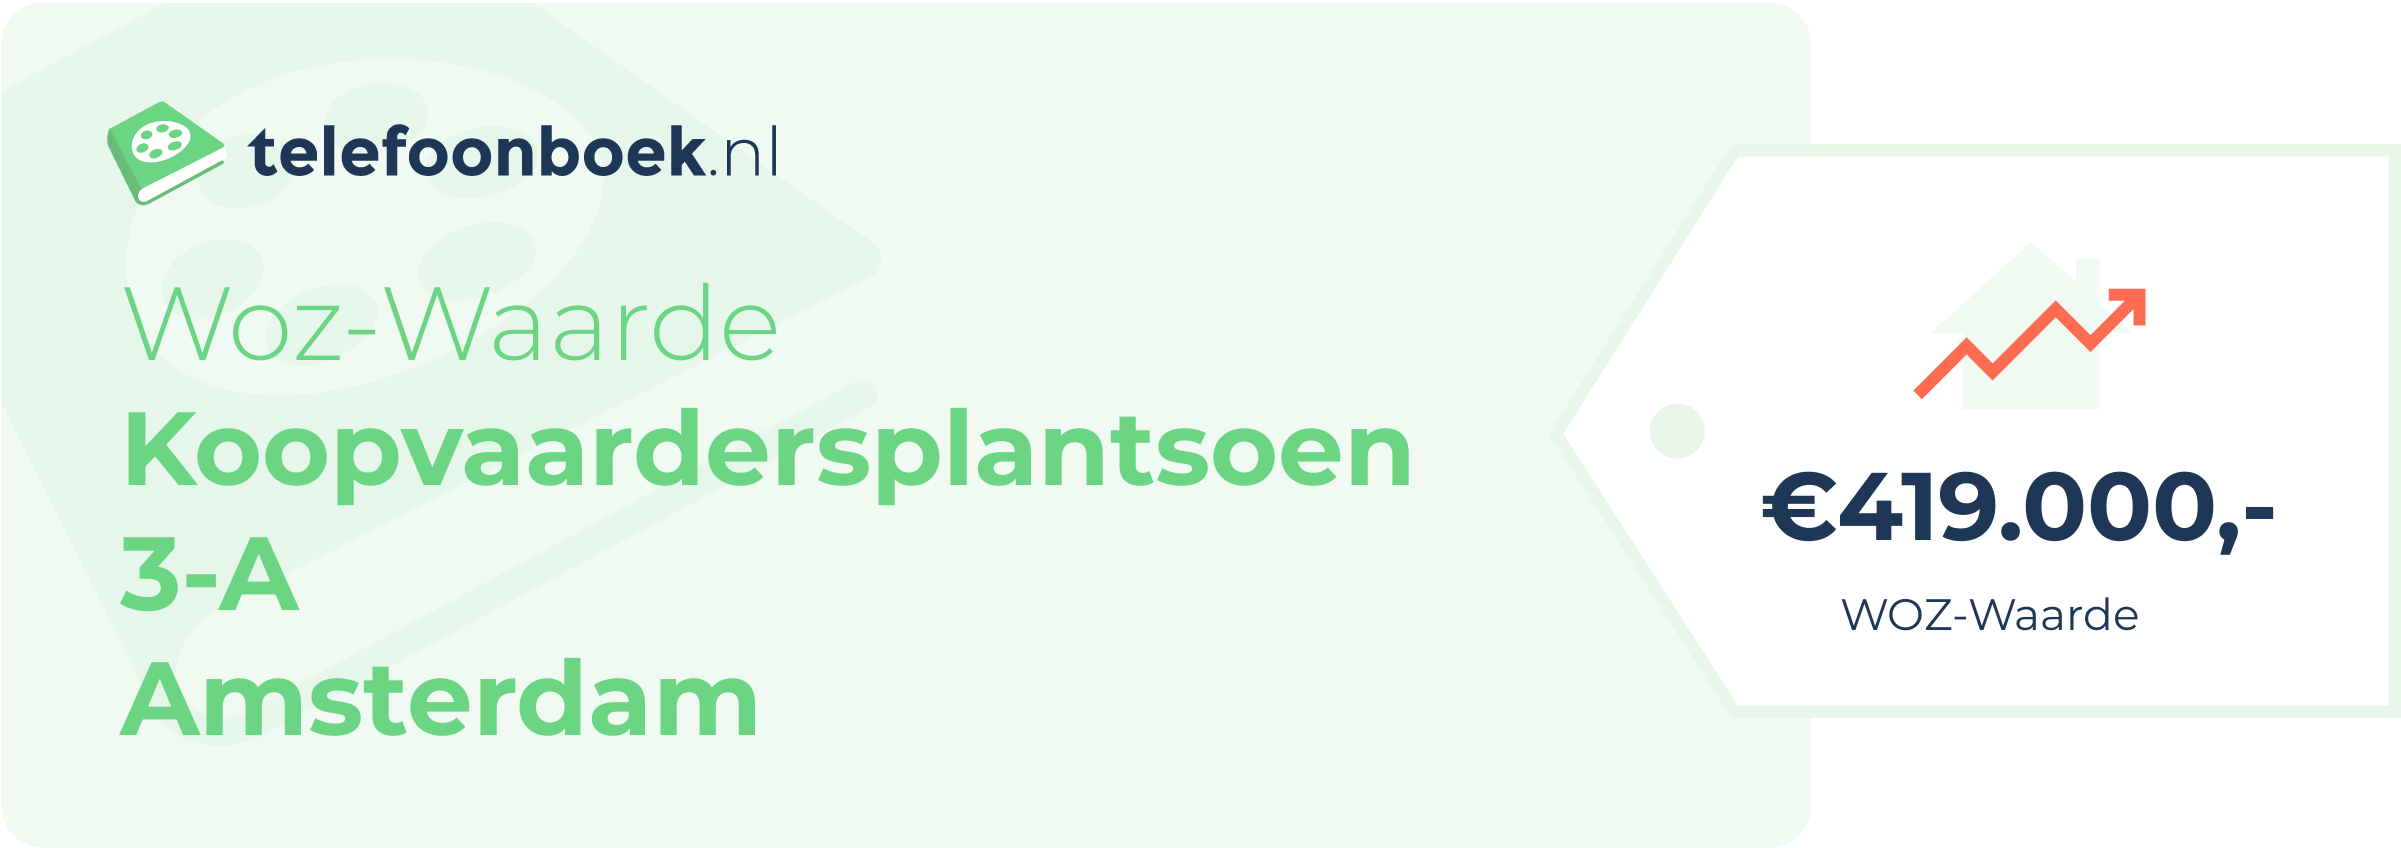 WOZ-waarde Koopvaardersplantsoen 3-A Amsterdam